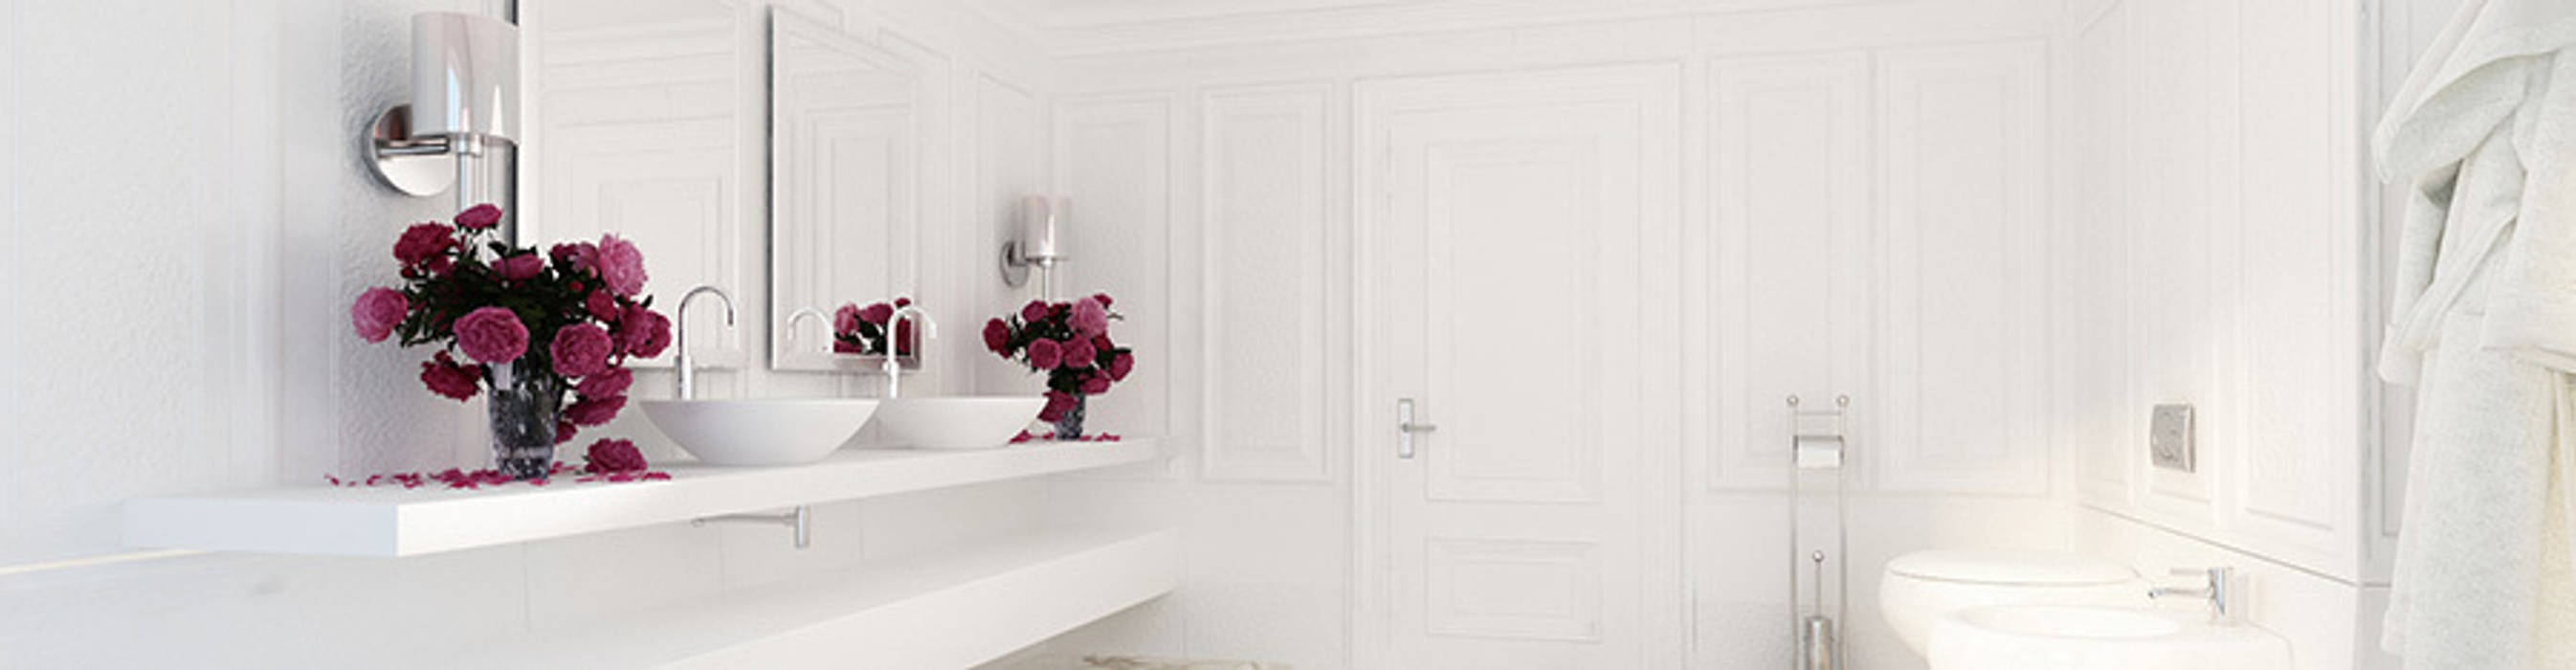 Дизайн квартиры в стиле современная классика, Space - студия дизайна интерьера премиум класса Space - студия дизайна интерьера премиум класса Classic style bathroom